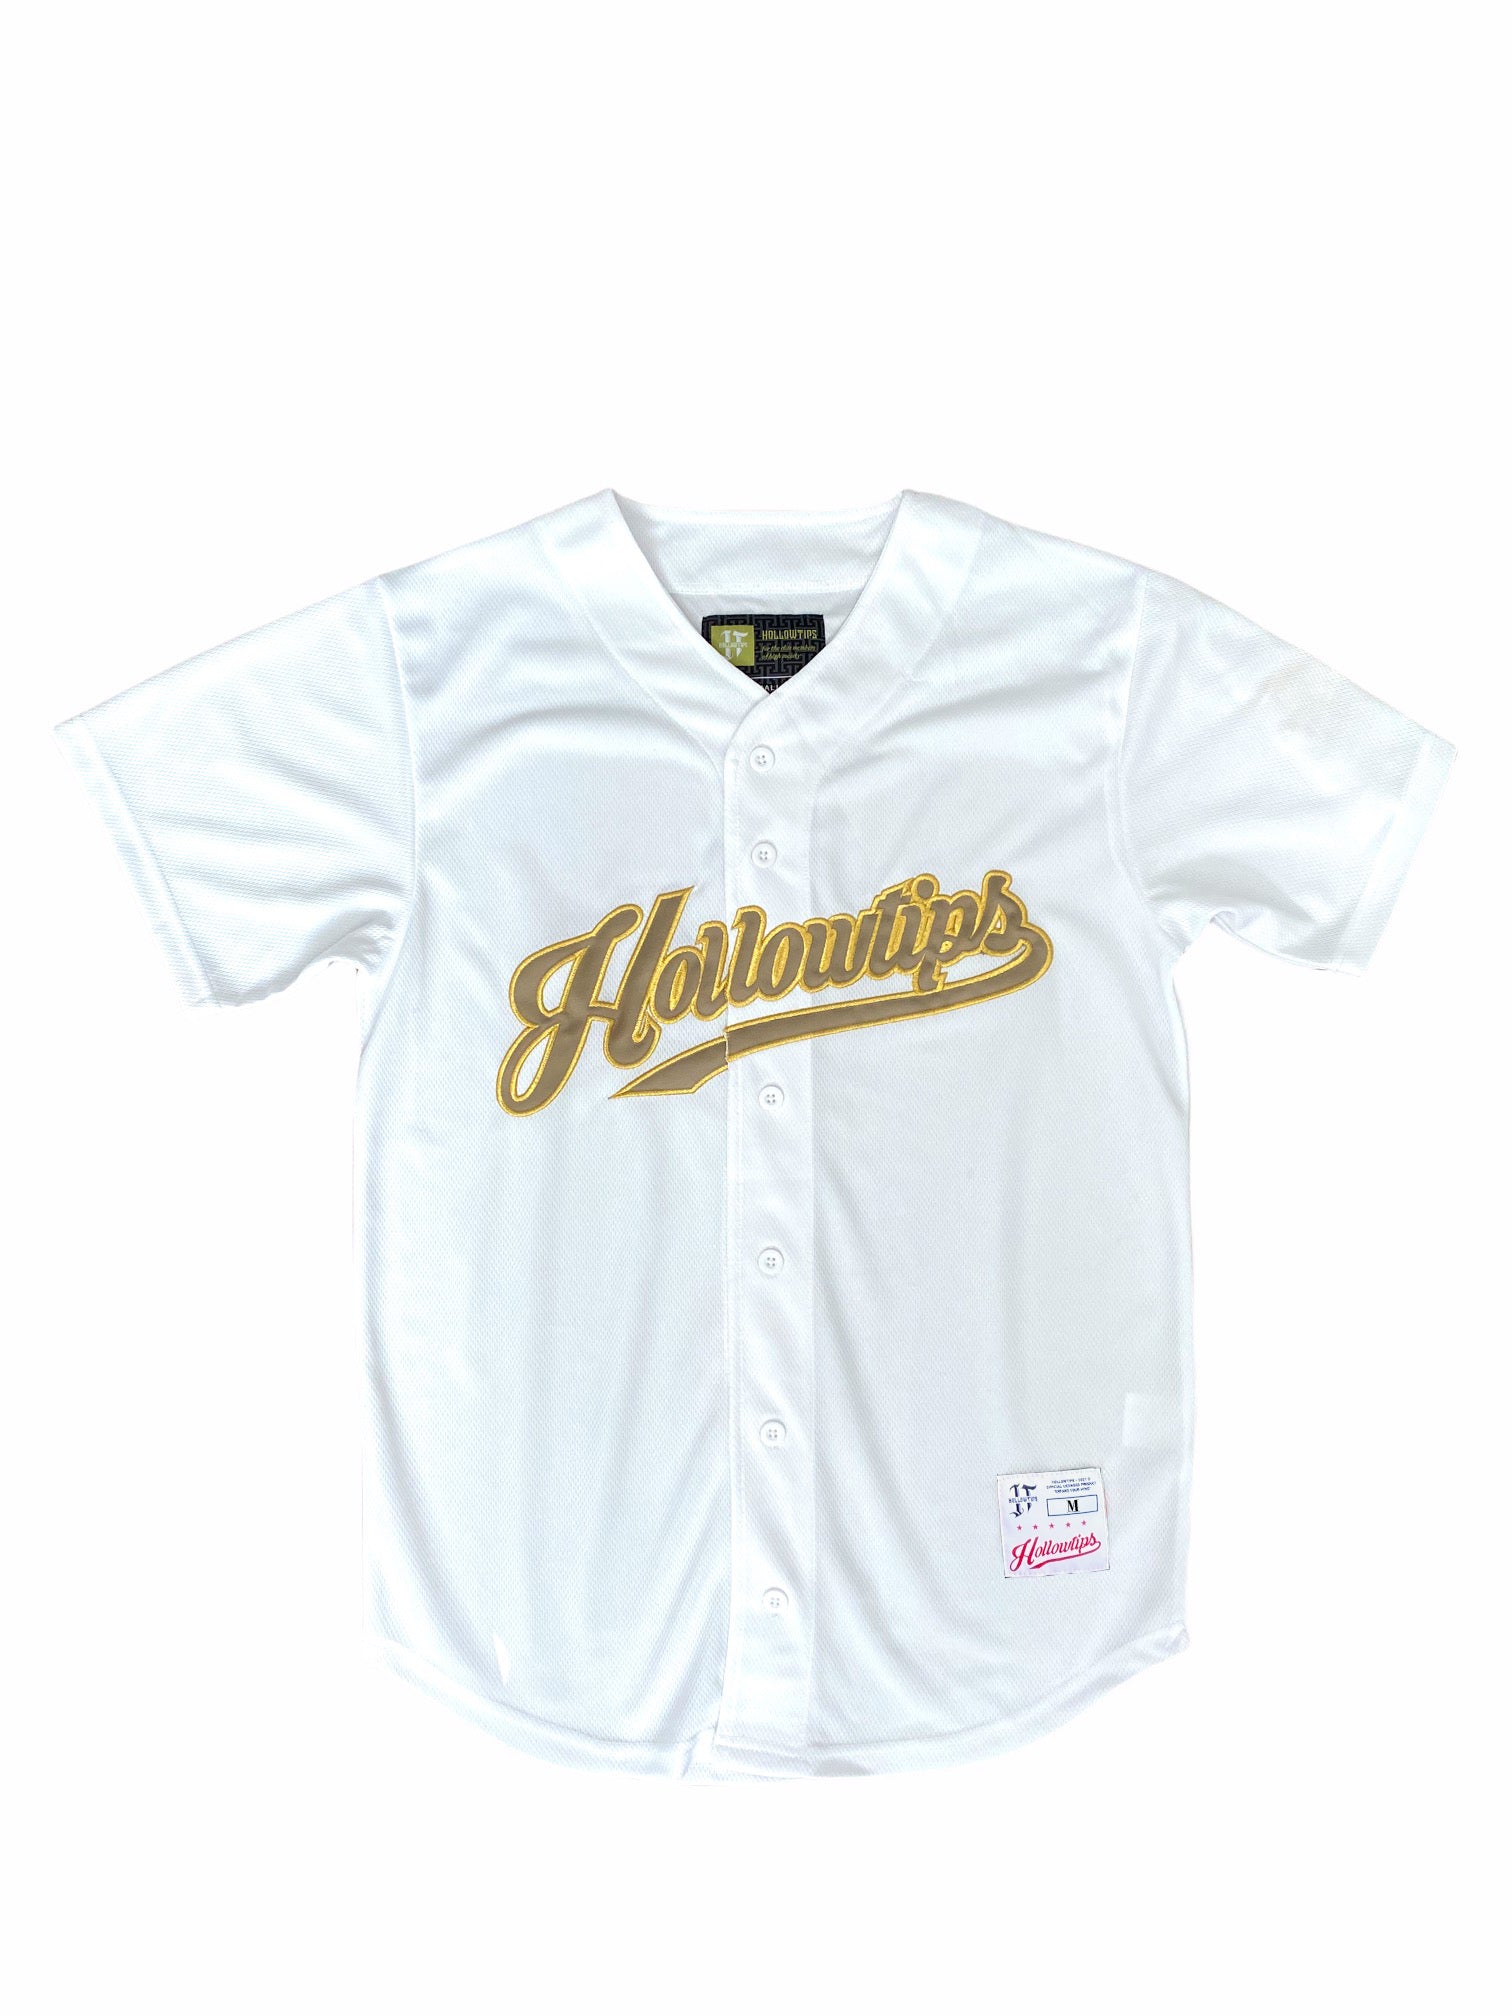 Hollowtips Baseball Jersey (White)